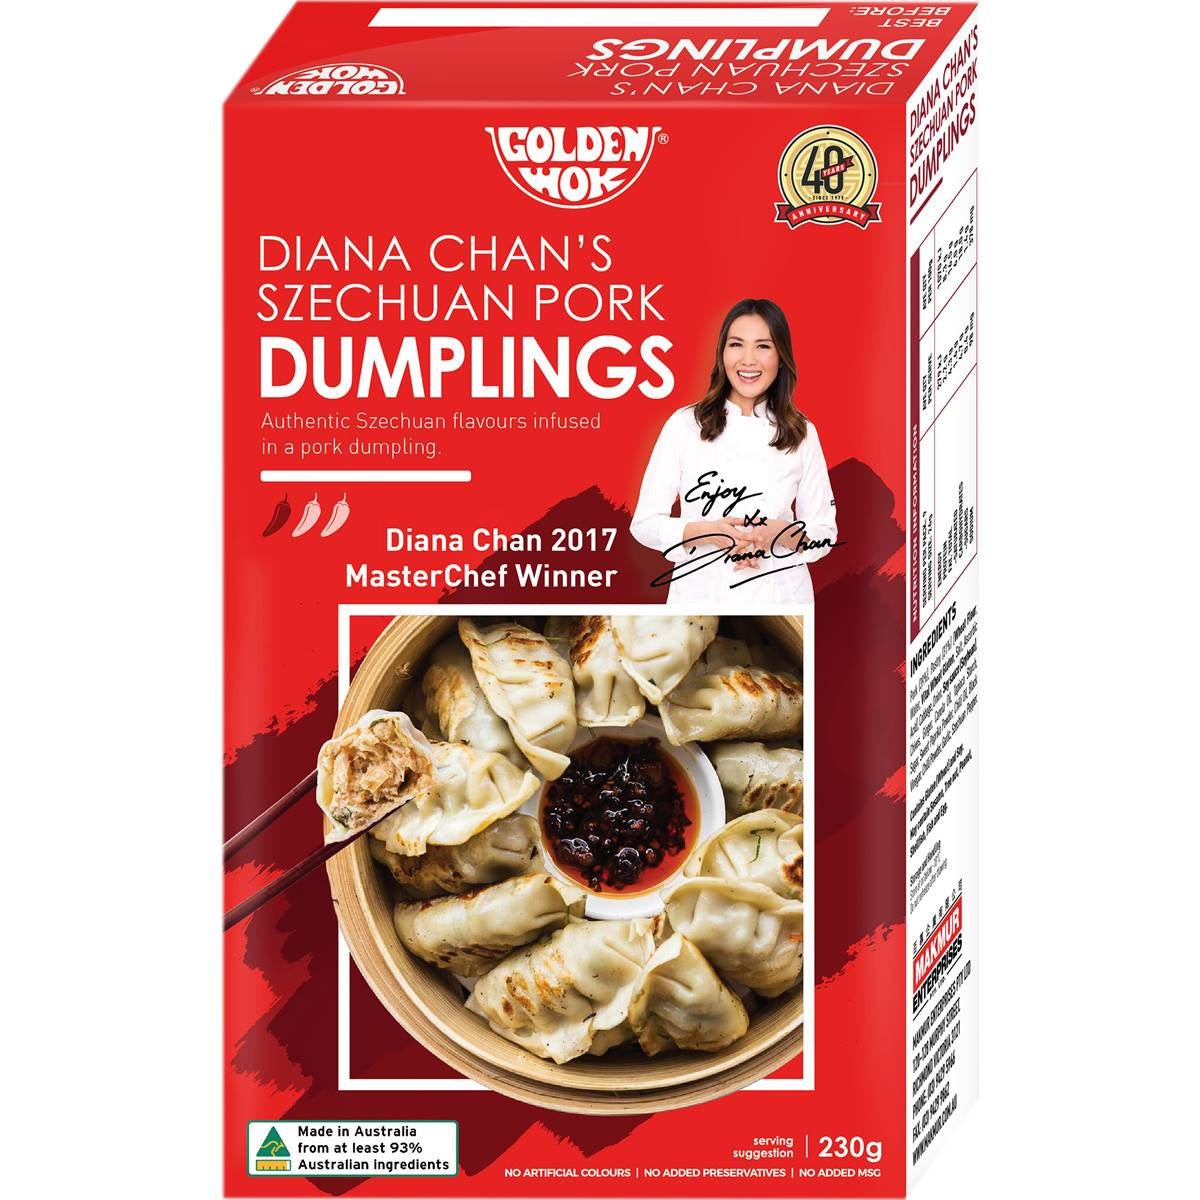 Golden Wok Diana Chan Szechuan Peppered Pork Dumpling 230g